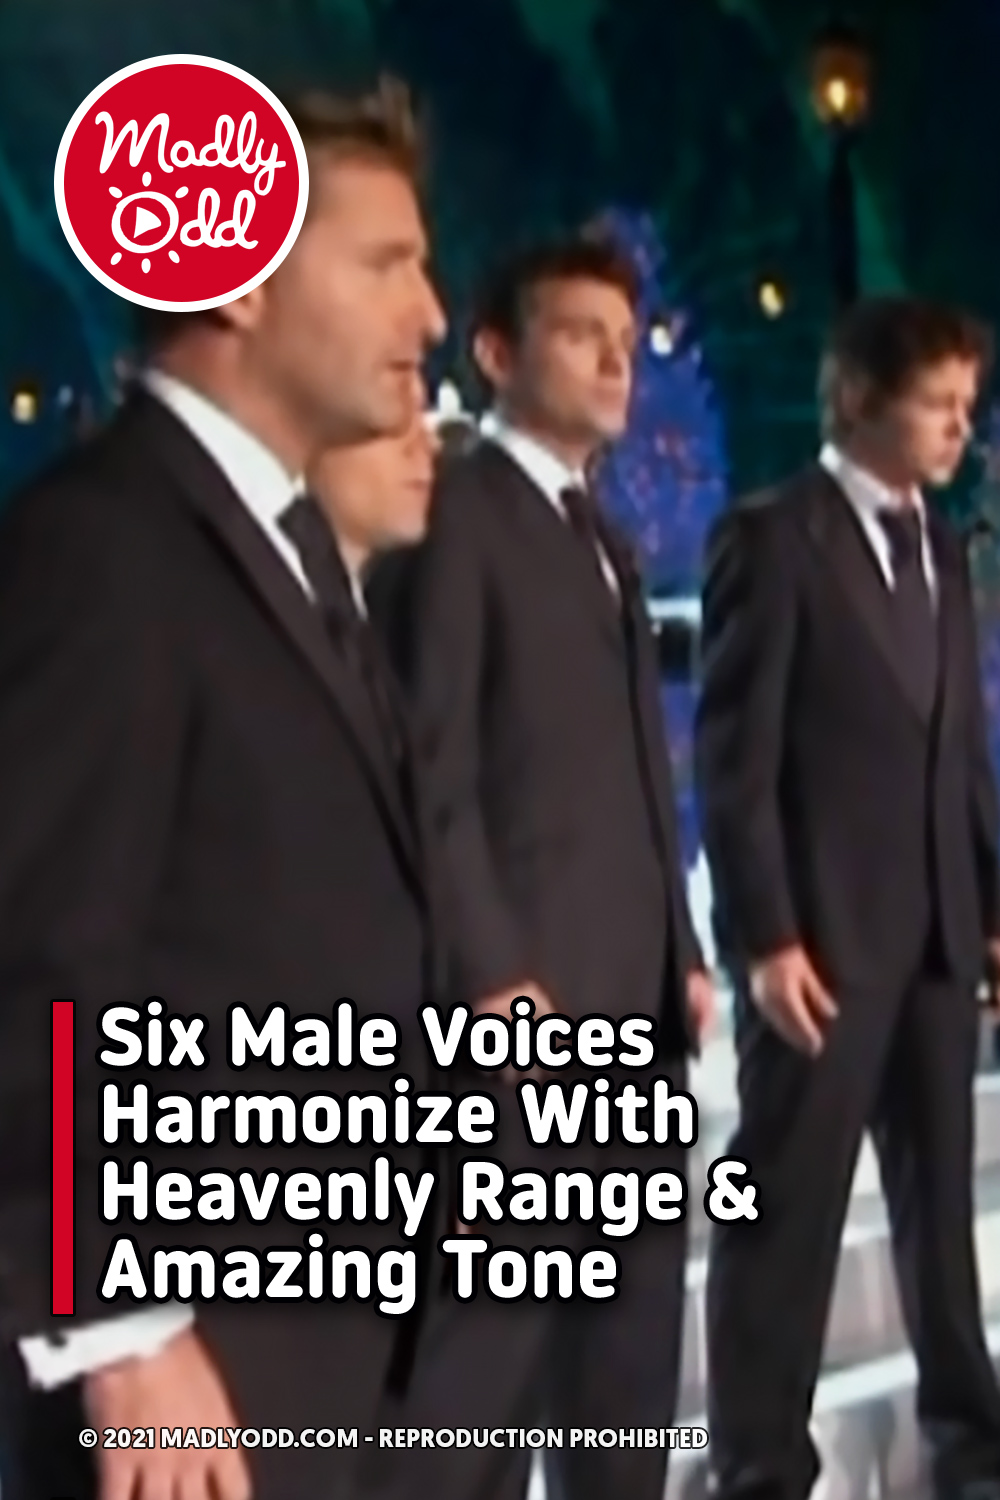 Six Male Voices Harmonize With Heavenly Range & Amazing Tone